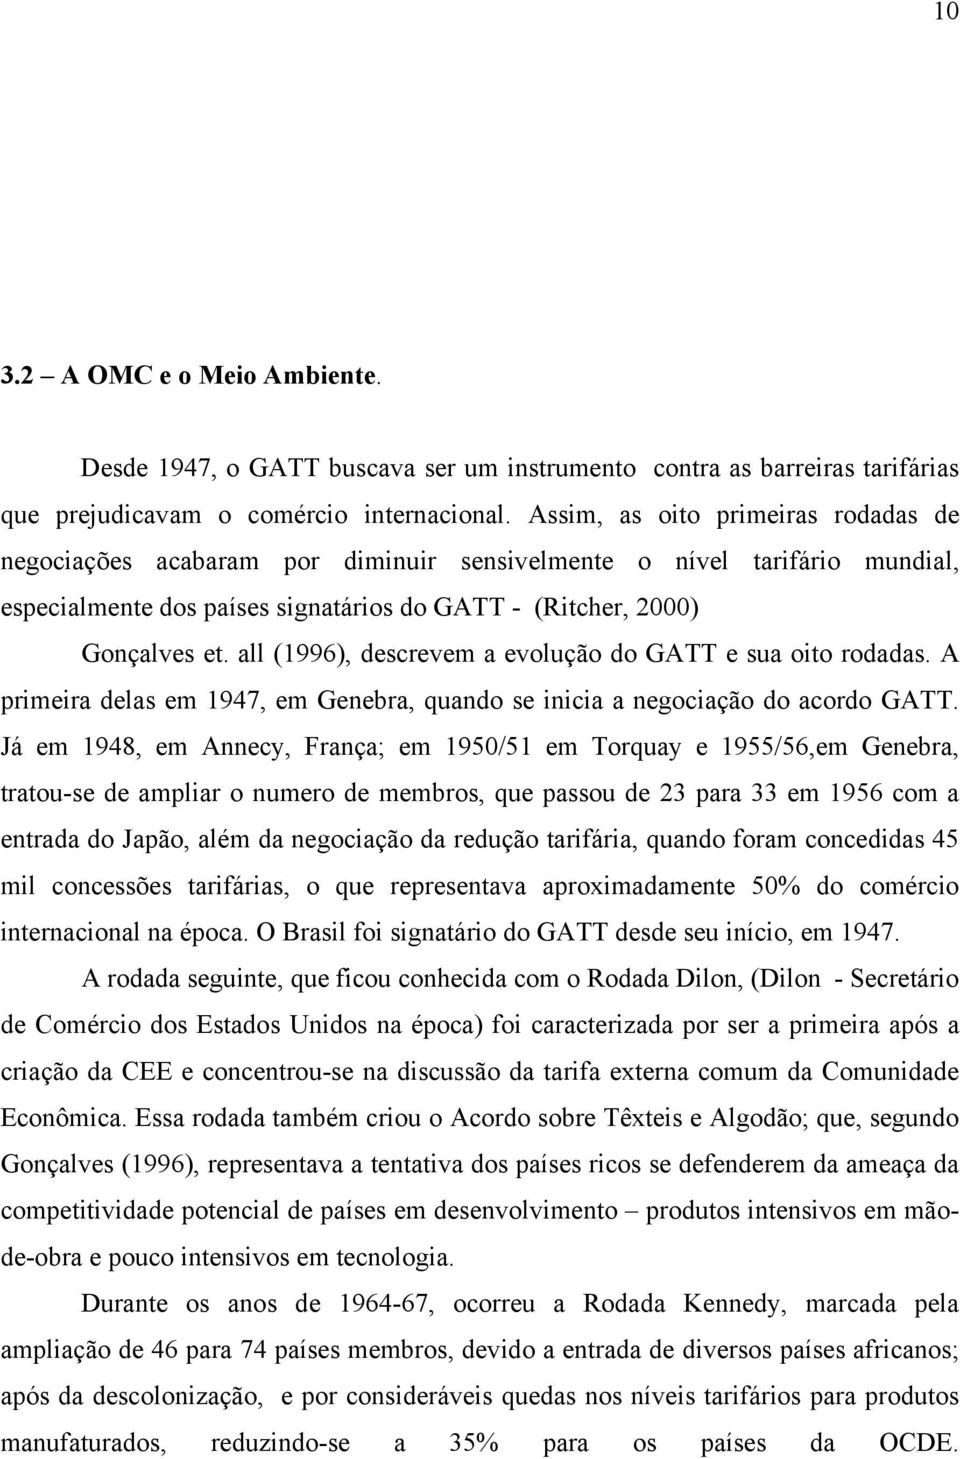 all (1996), descrevem a evolução do GATT e sua oito rodadas. A primeira delas em 1947, em Genebra, quando se inicia a negociação do acordo GATT.